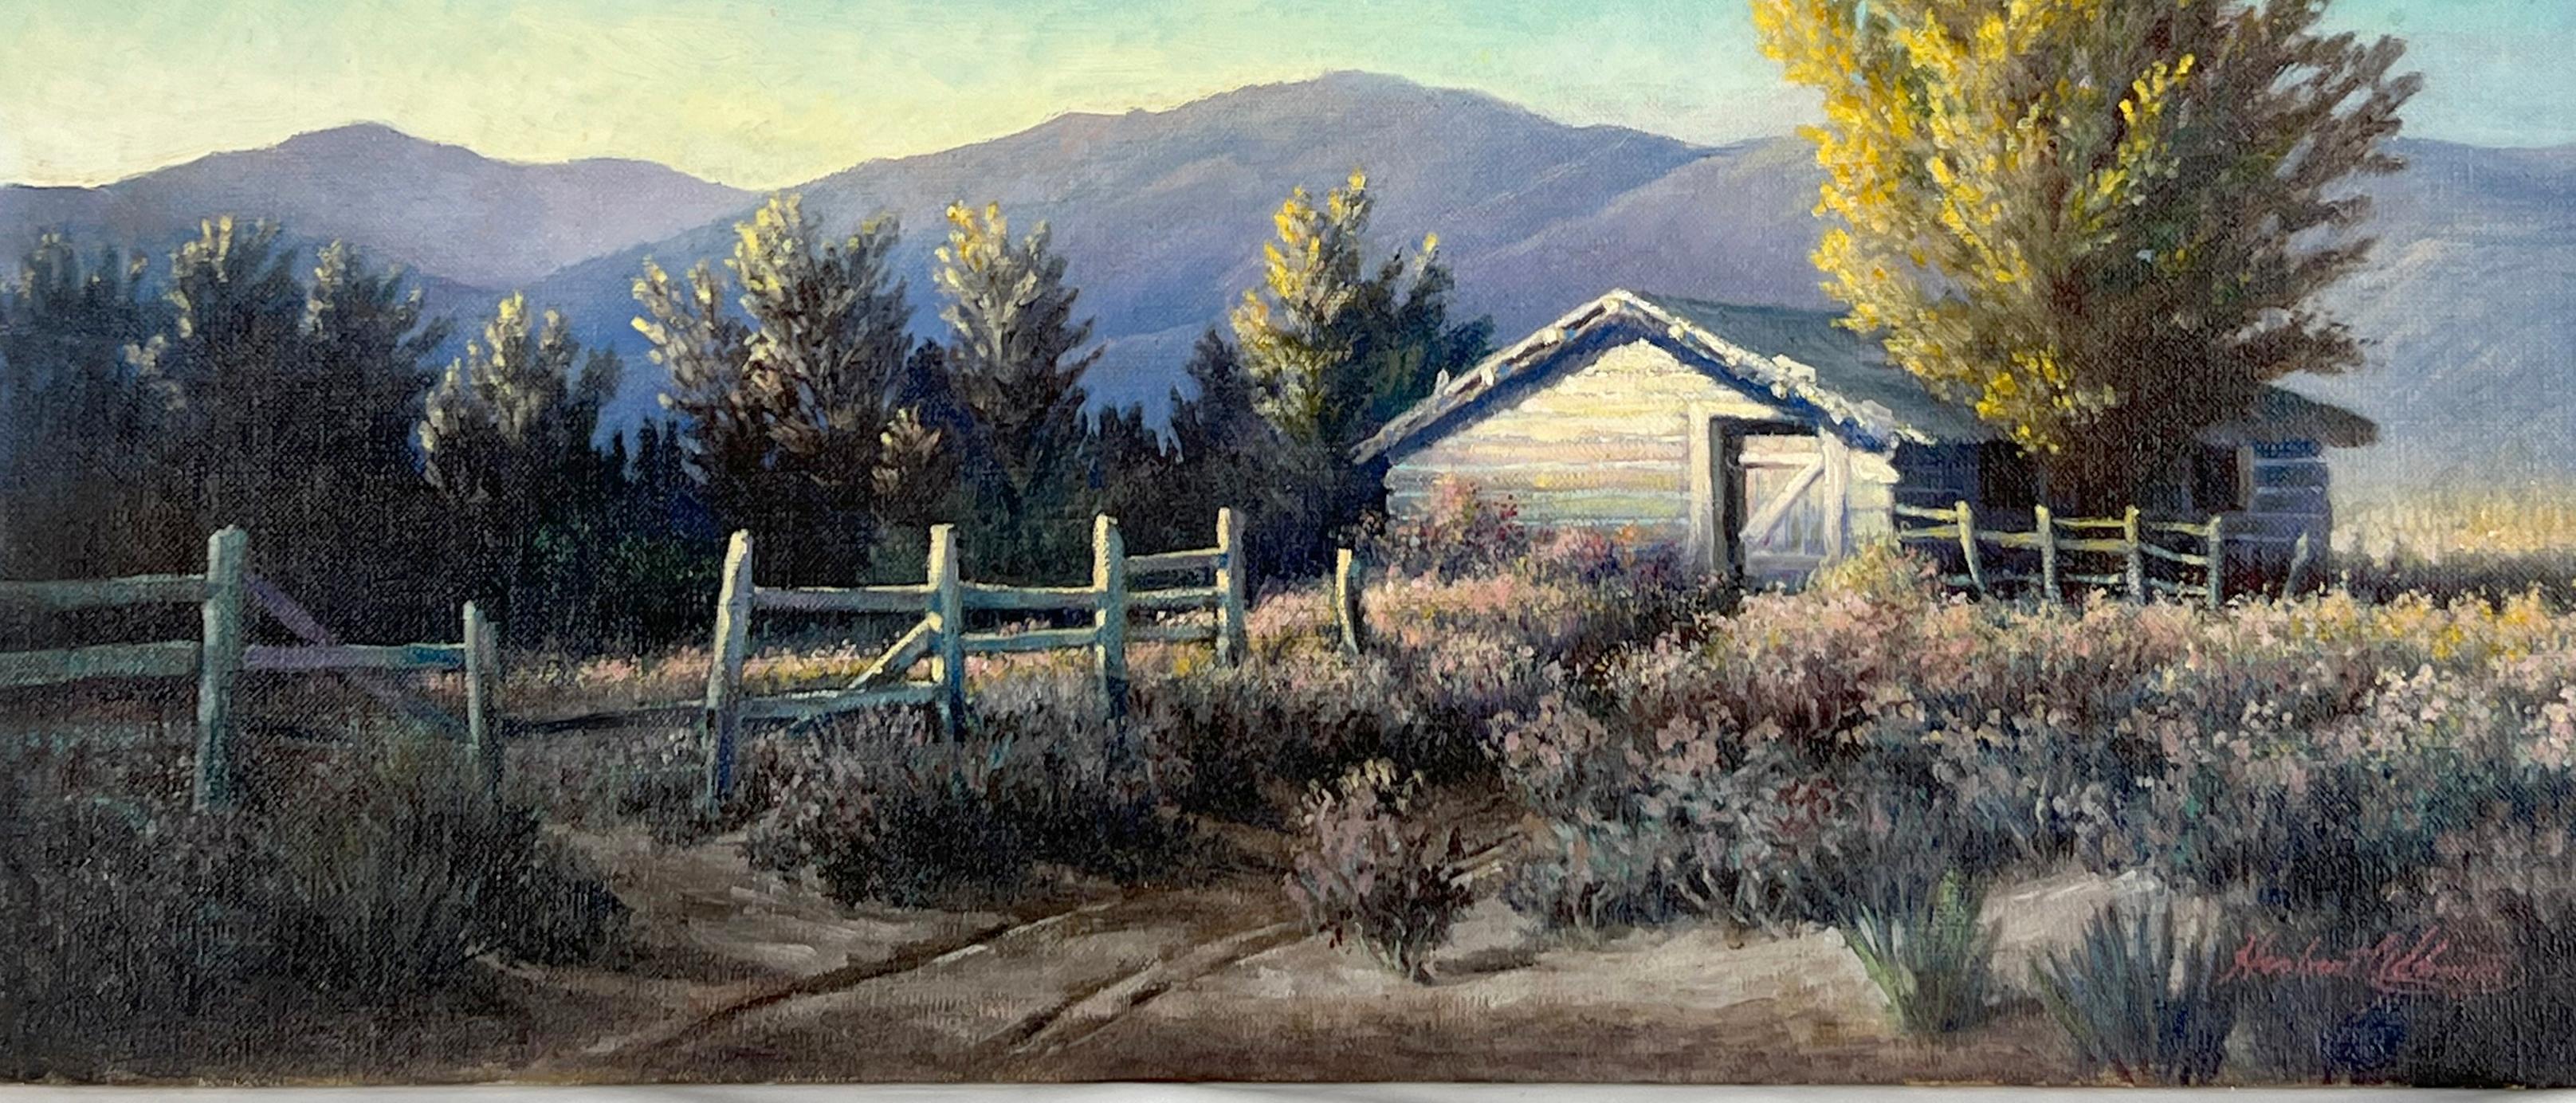 Tisch und Korral in den California Hills – 1930er-Jahre (Blau), Landscape Painting, von Herbert A. Schmidt